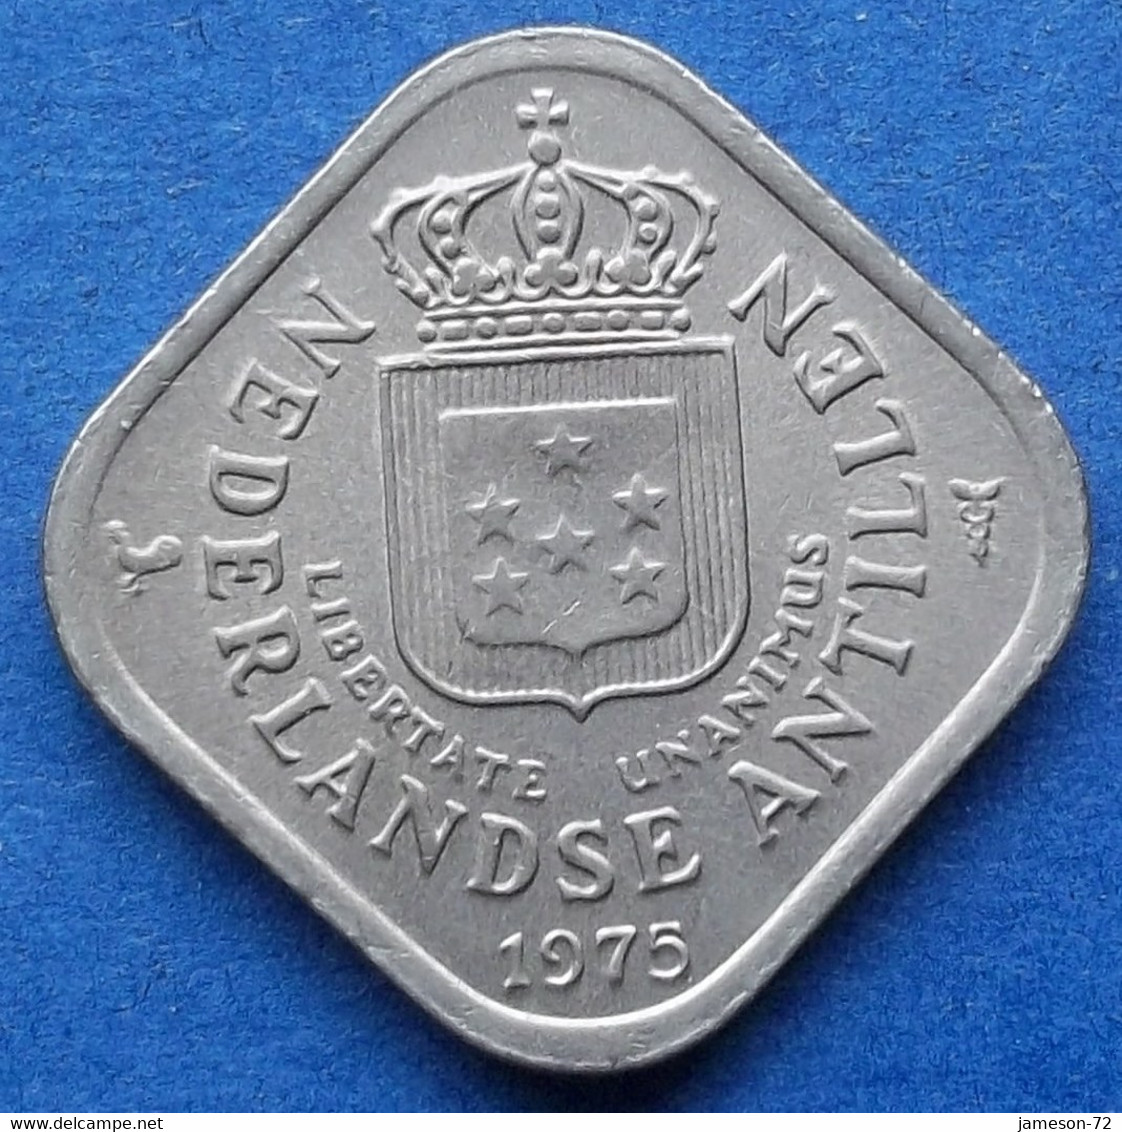 NETHERLANDS ANTILLES - 5 Cents 1975 KM# 13 Juliana (1948-1980) - Edelweiss Coins - Antilles Néerlandaises